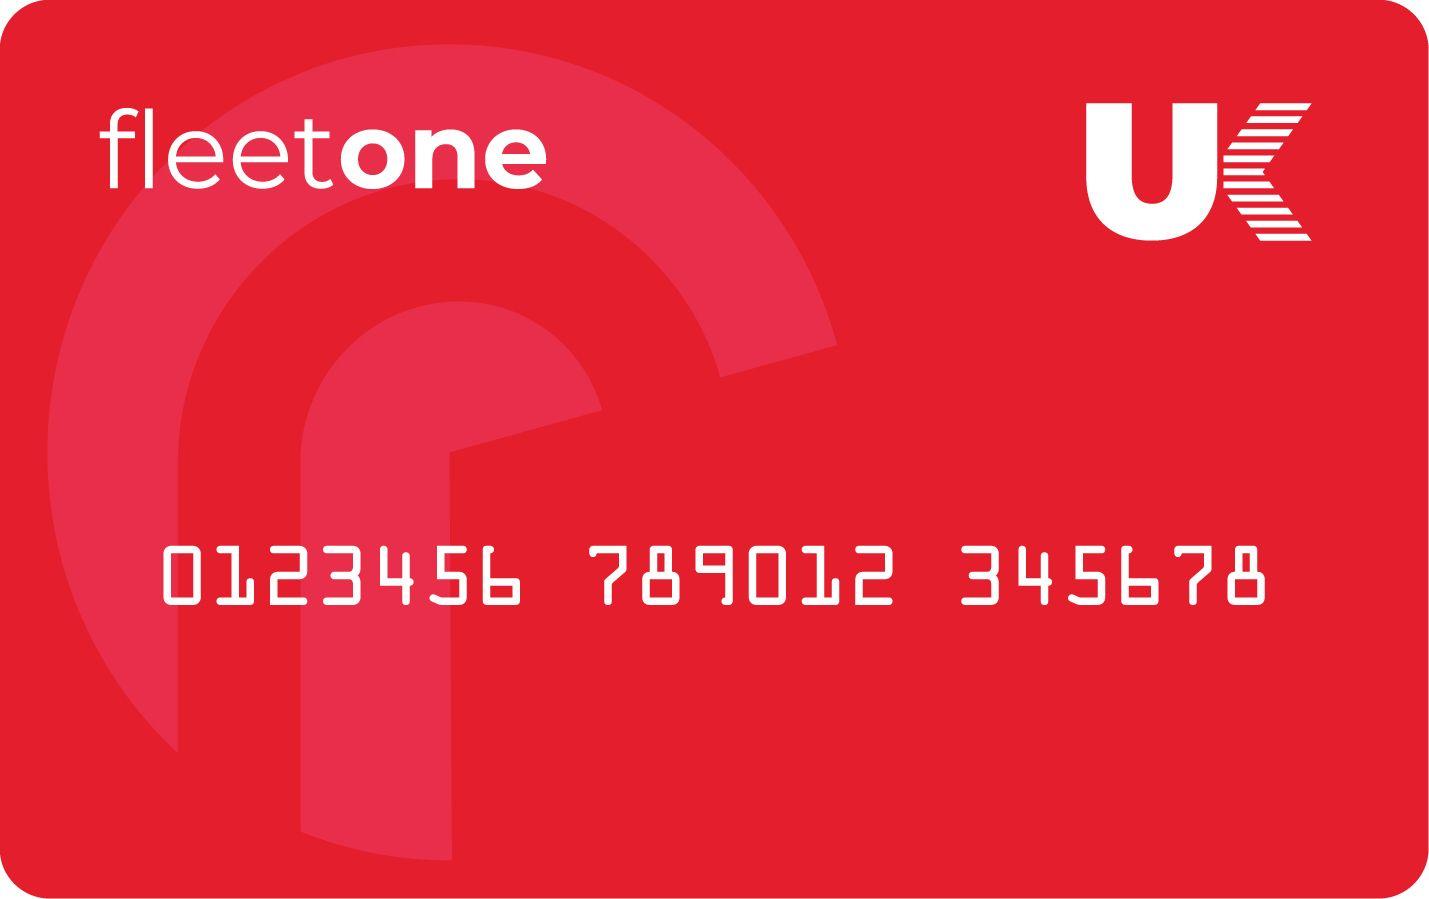 Fleetone UK Fuels card